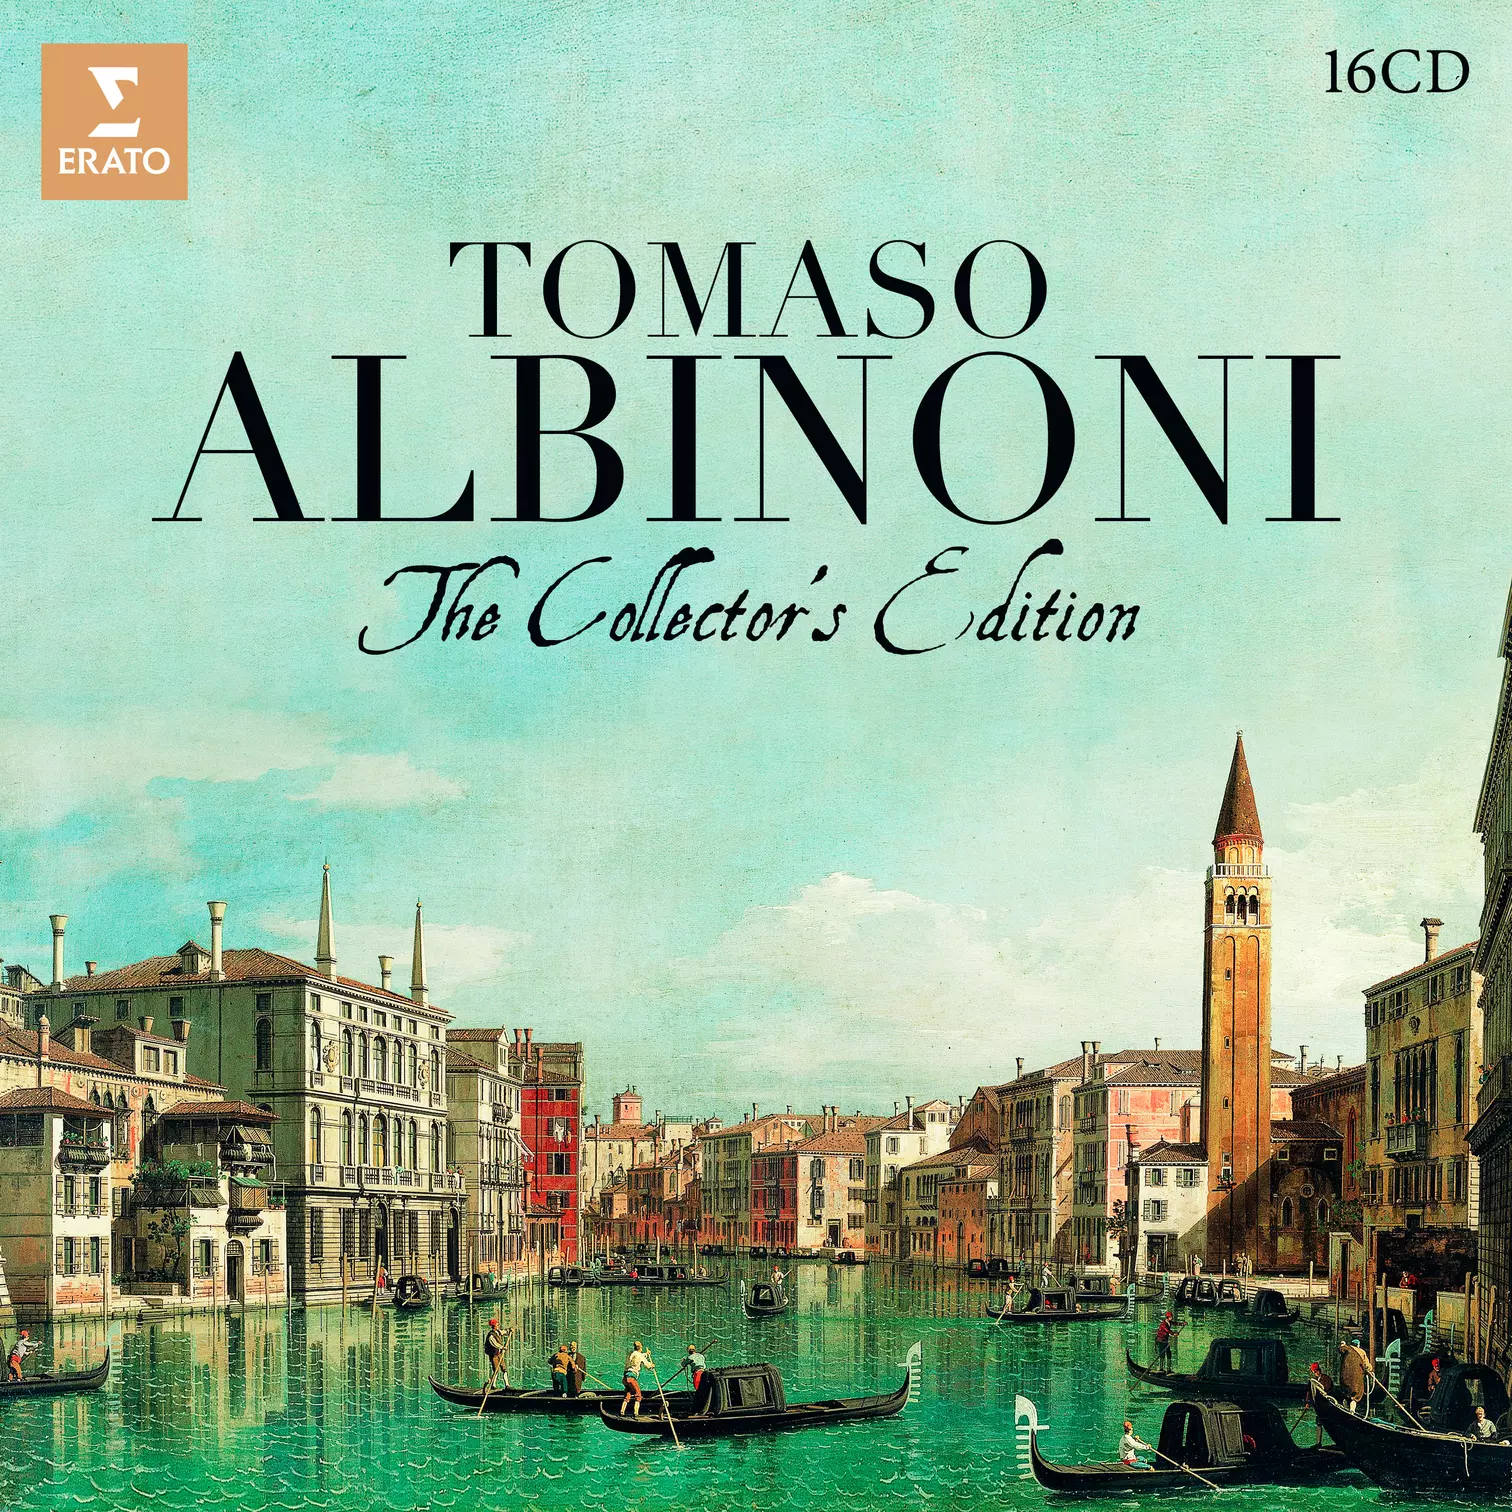 Tomaso Albinoni: The Collector’s Edition